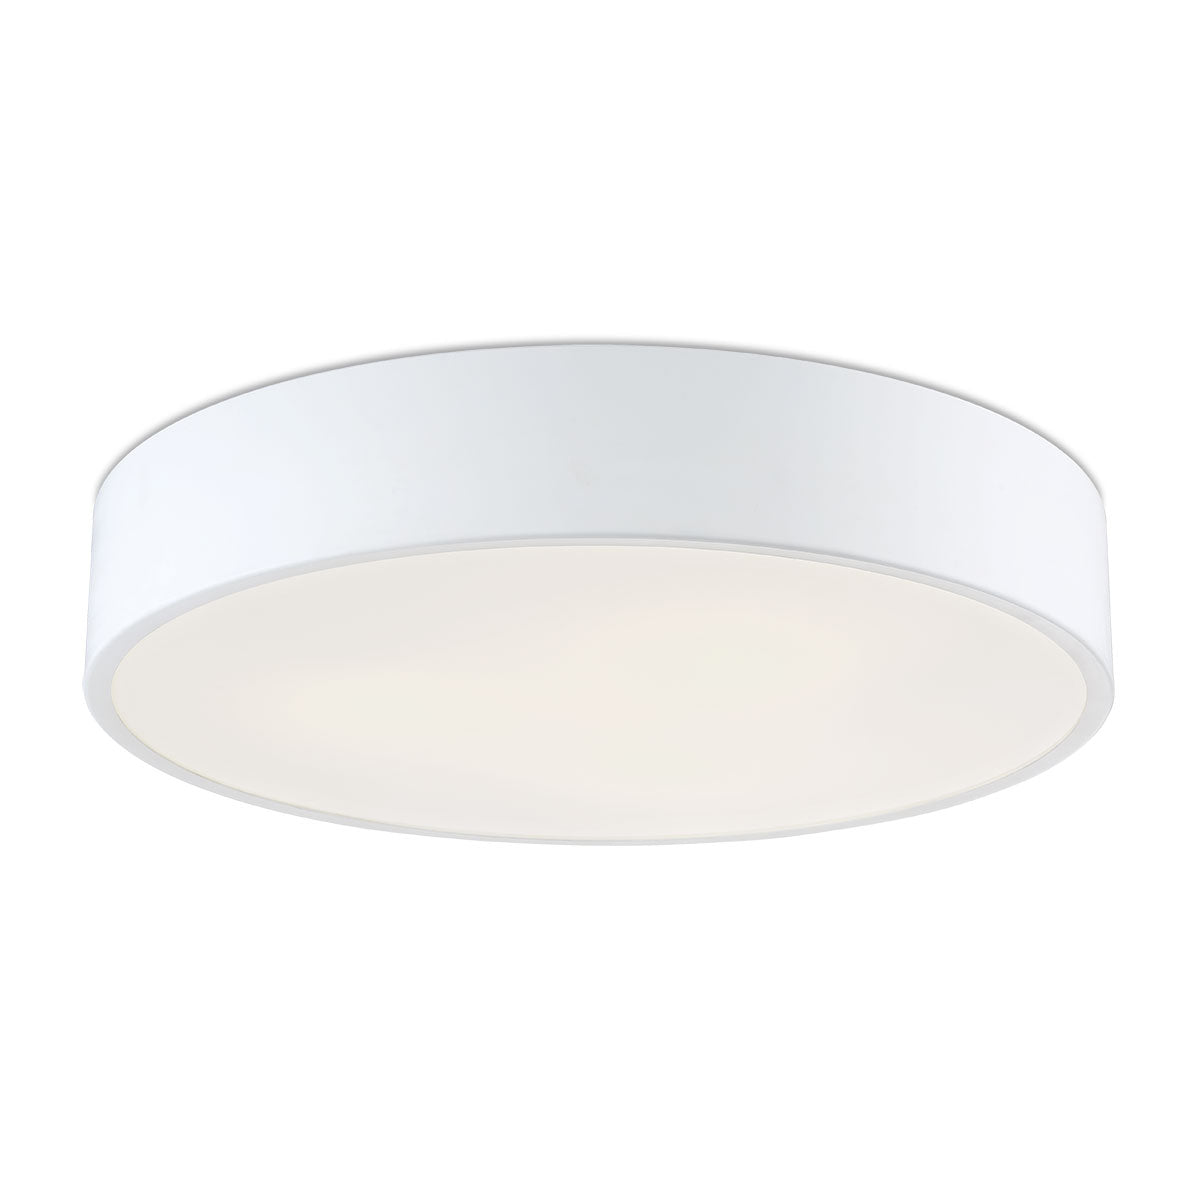 NAPOLEON Flush mount White - 32695-014 INTEGRATED LED | EUROFASE